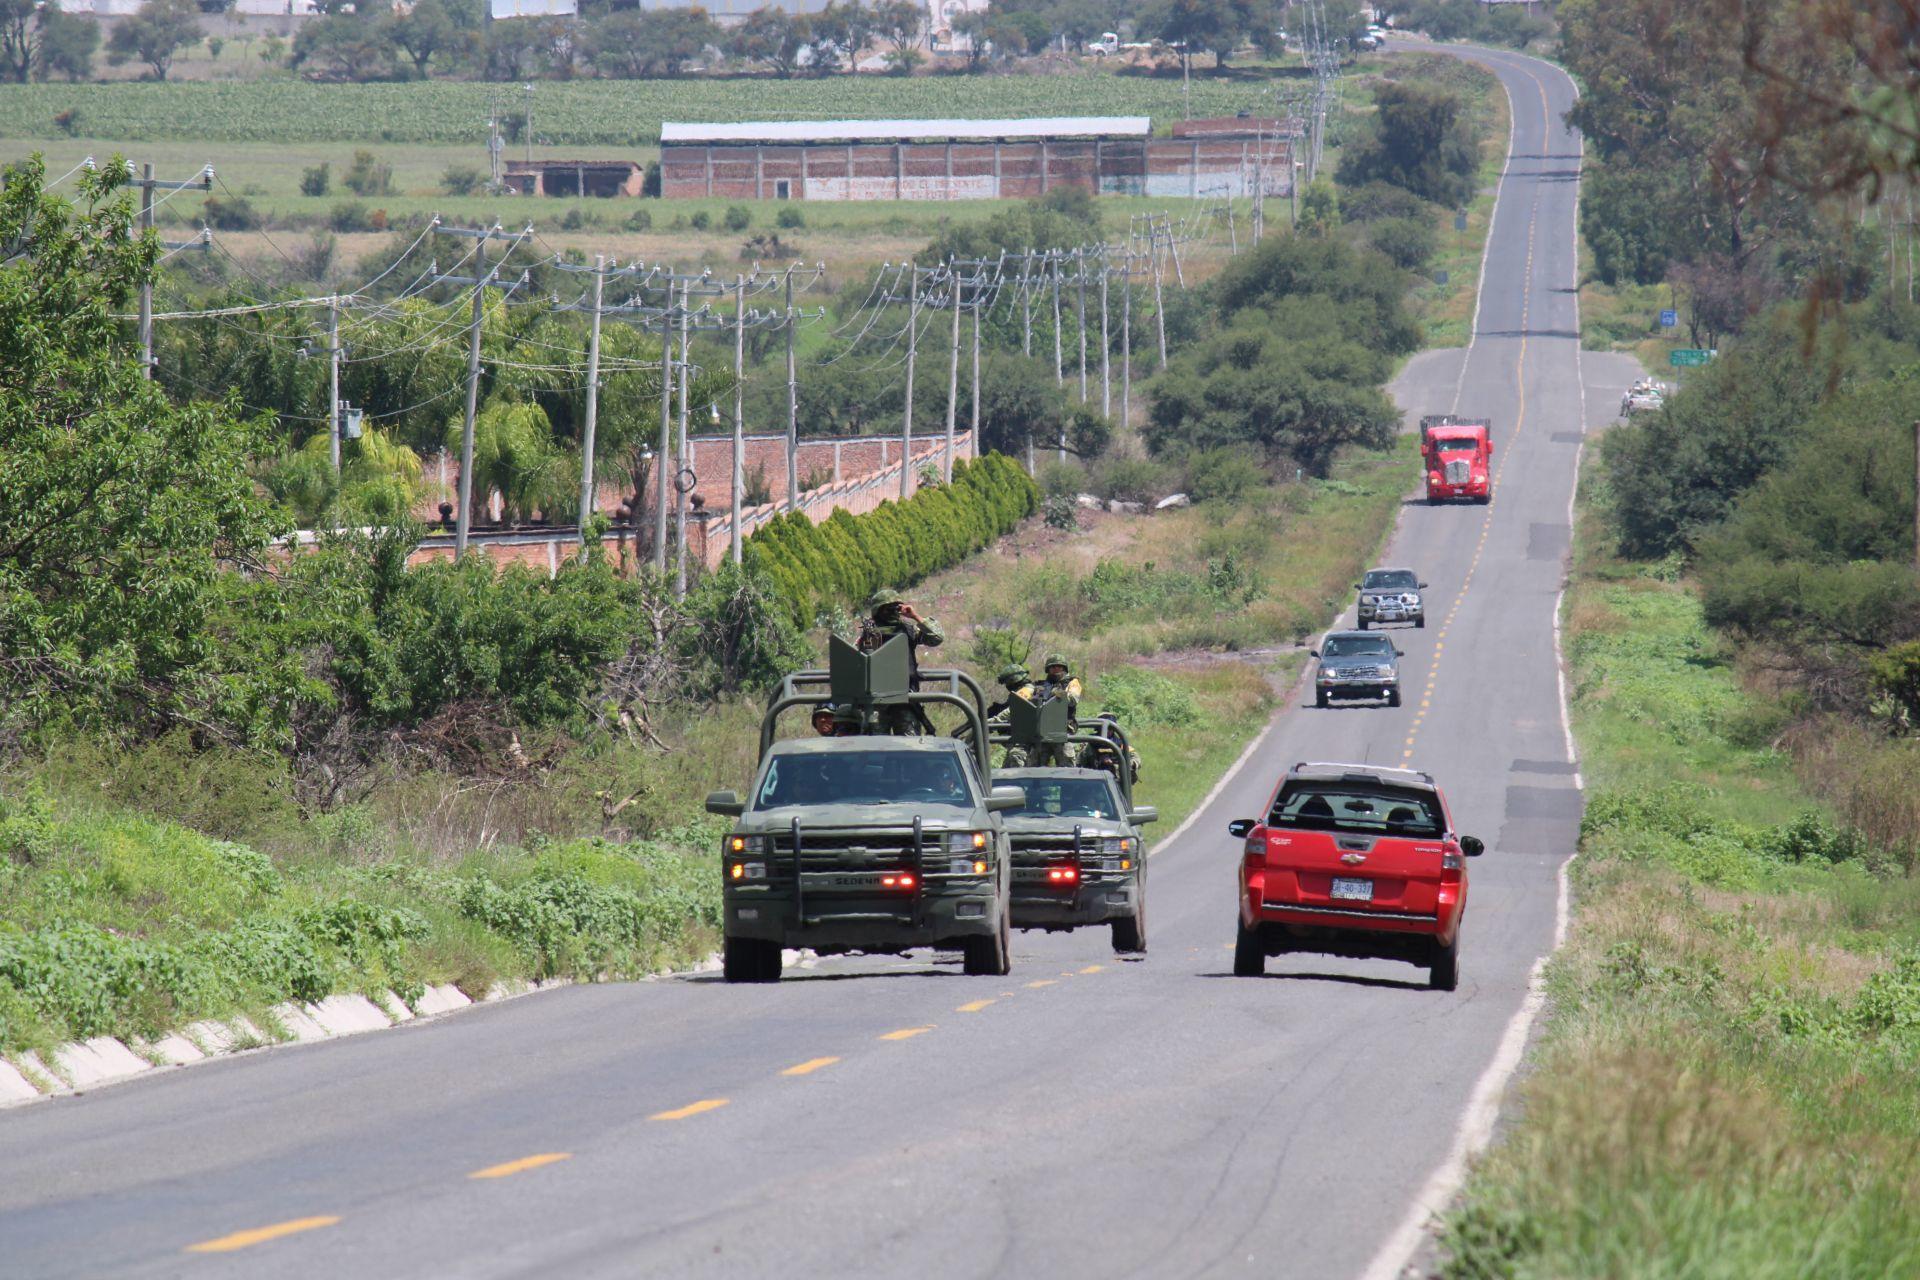 Amputan manos a tres jóvenes y los arrojan en carretera de Silao, Guanajuato